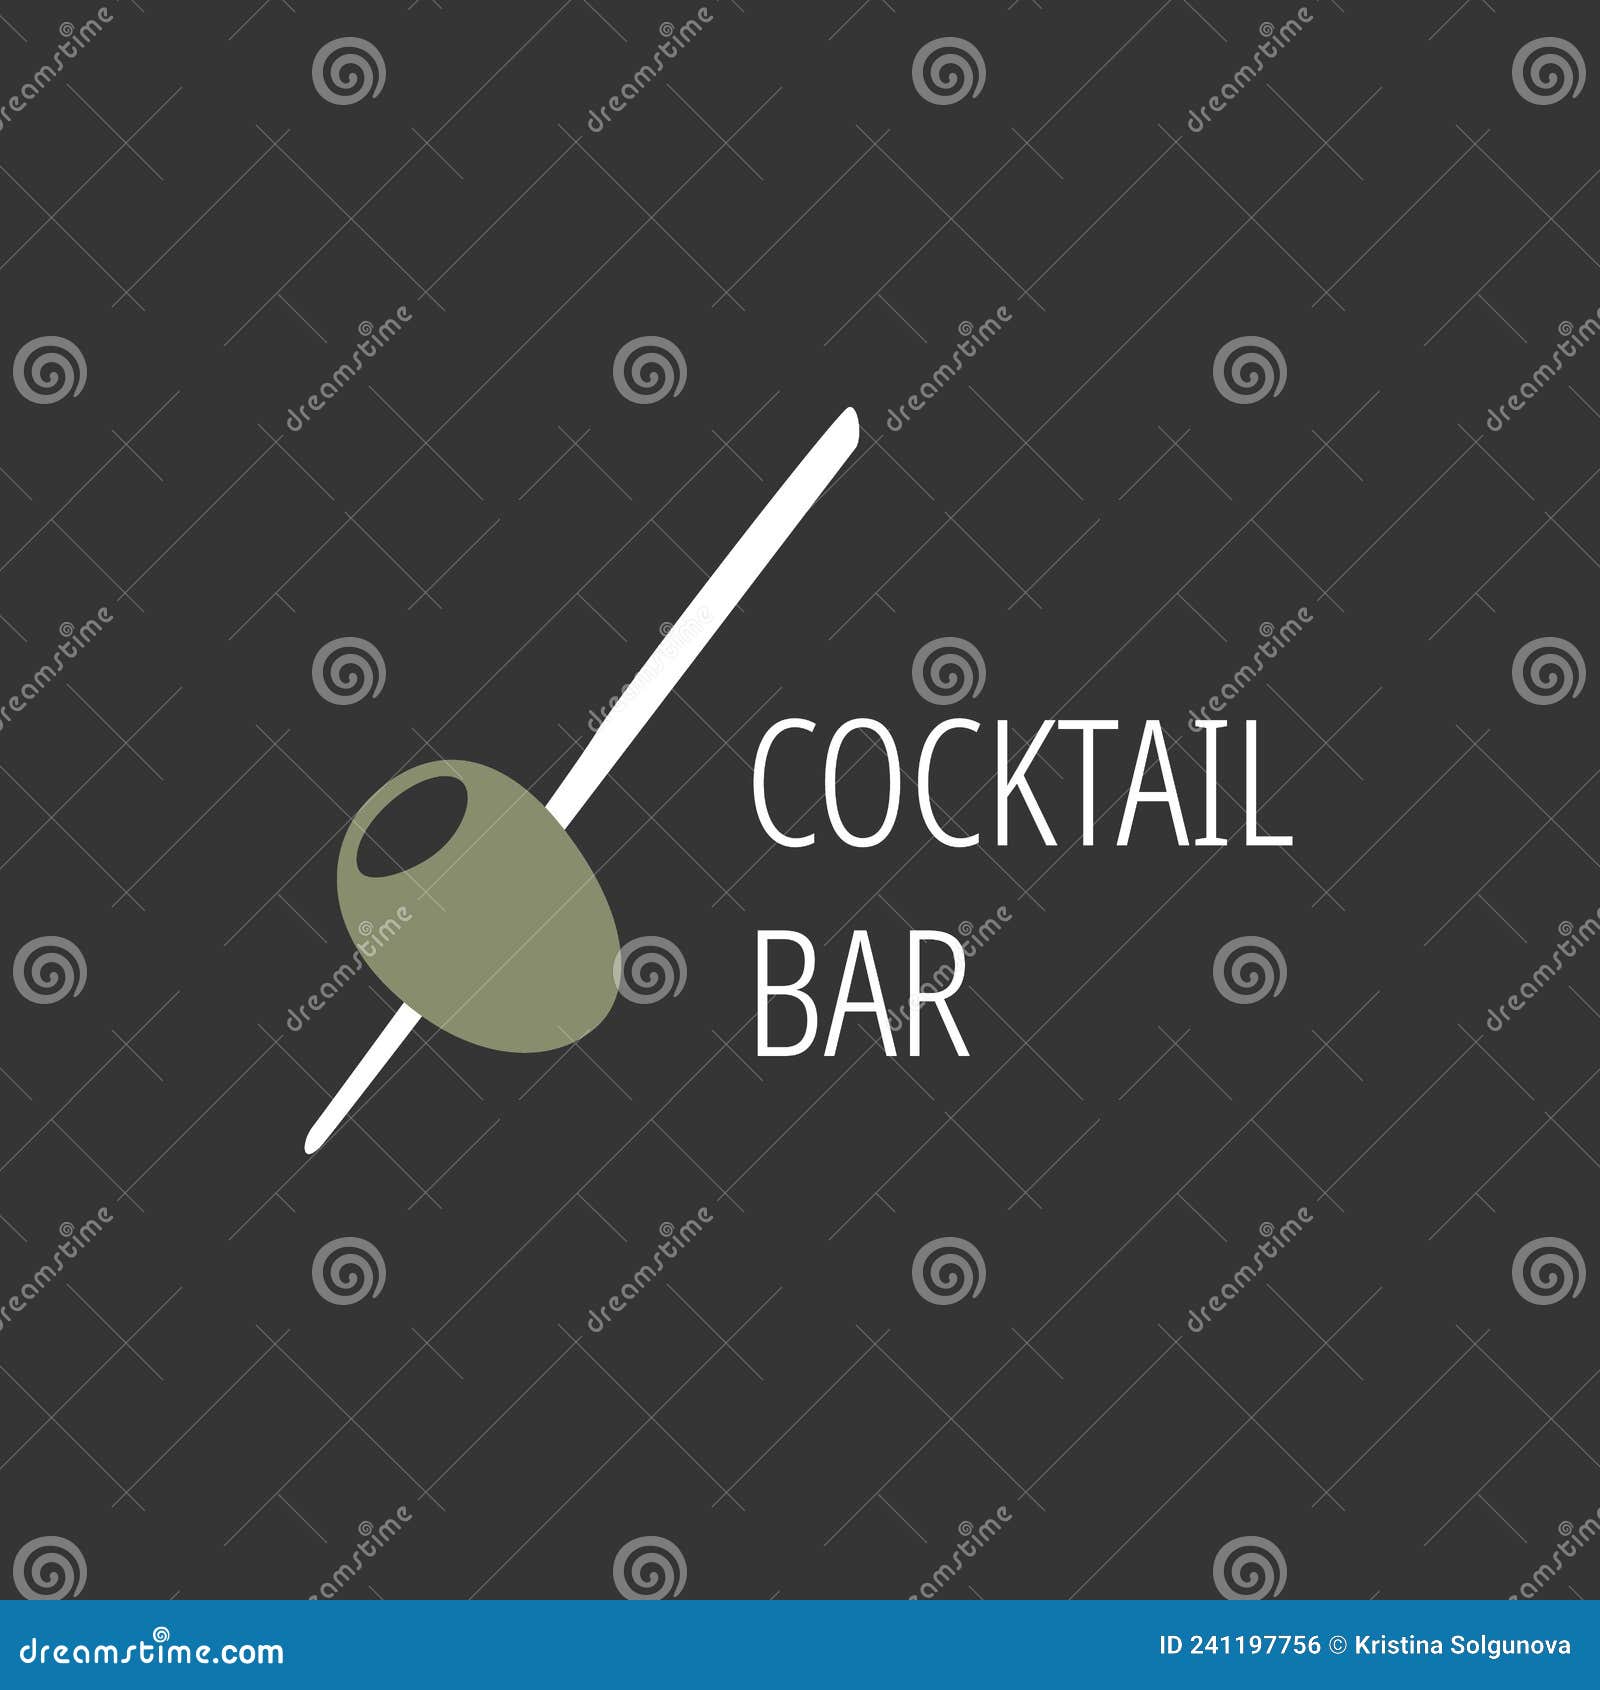 https://thumbs.dreamstime.com/z/minimalistic-logo-alcoholic-bar-shop-restaurant-green-olive-skewer-black-background-inscription-cocktail-241197756.jpg